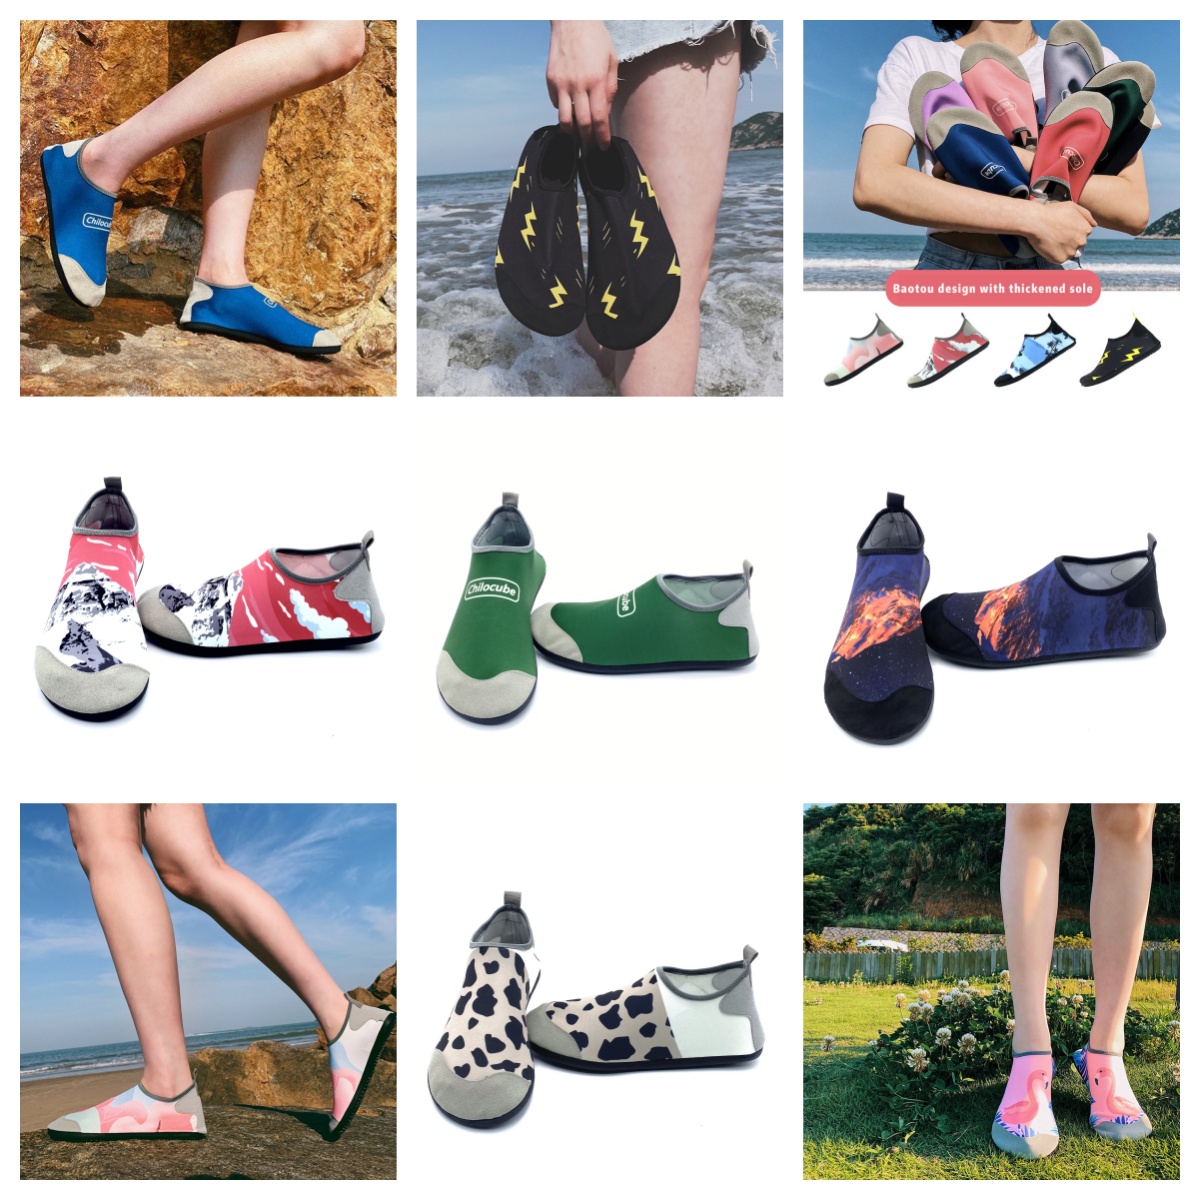 Atletische schoenen Gai Sandaalheren en dames waden schoen op blote voeten zwemsportschoenen groene buitenstranden sandaal paar kreek schoenmaat eur 35-46